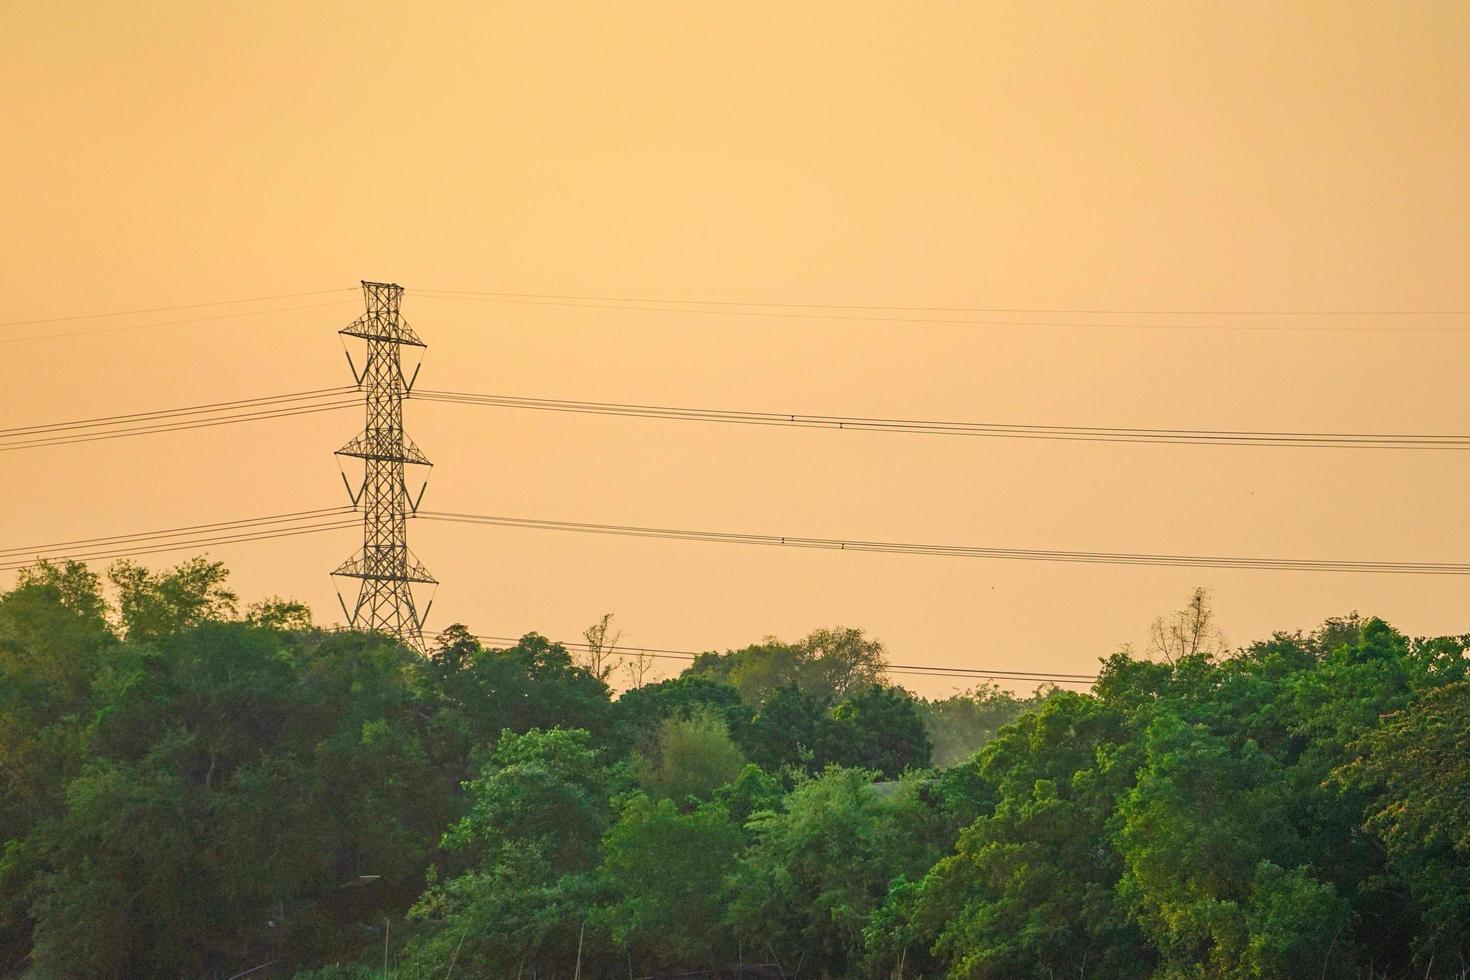 högspänning el torn och kabel med orange himmel solnedgång bakgrund, landskap av tropisk skog foto